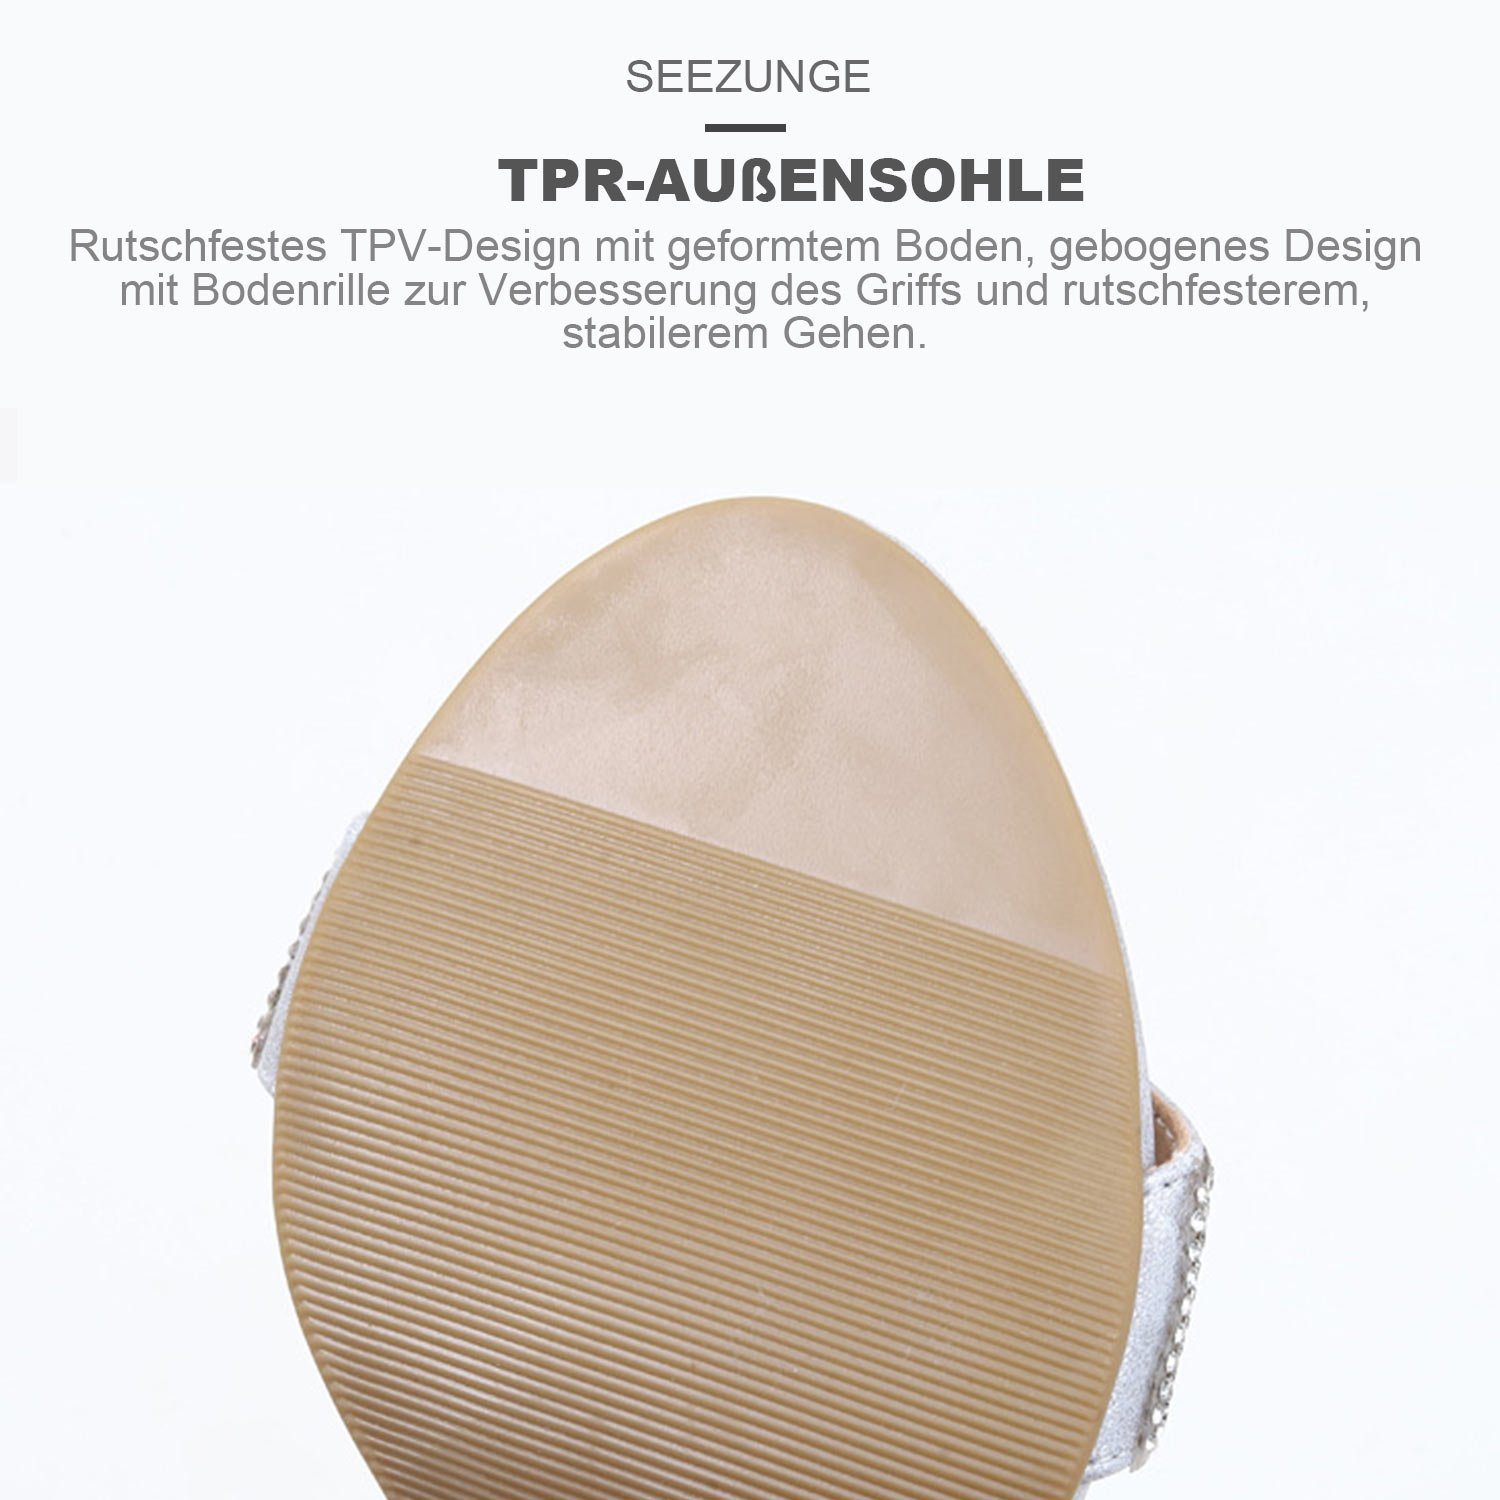 Daisred Pumps Damen Strass Sandale mit High-Heel-Sandalette den Silber Alltag Knöchelriemen für